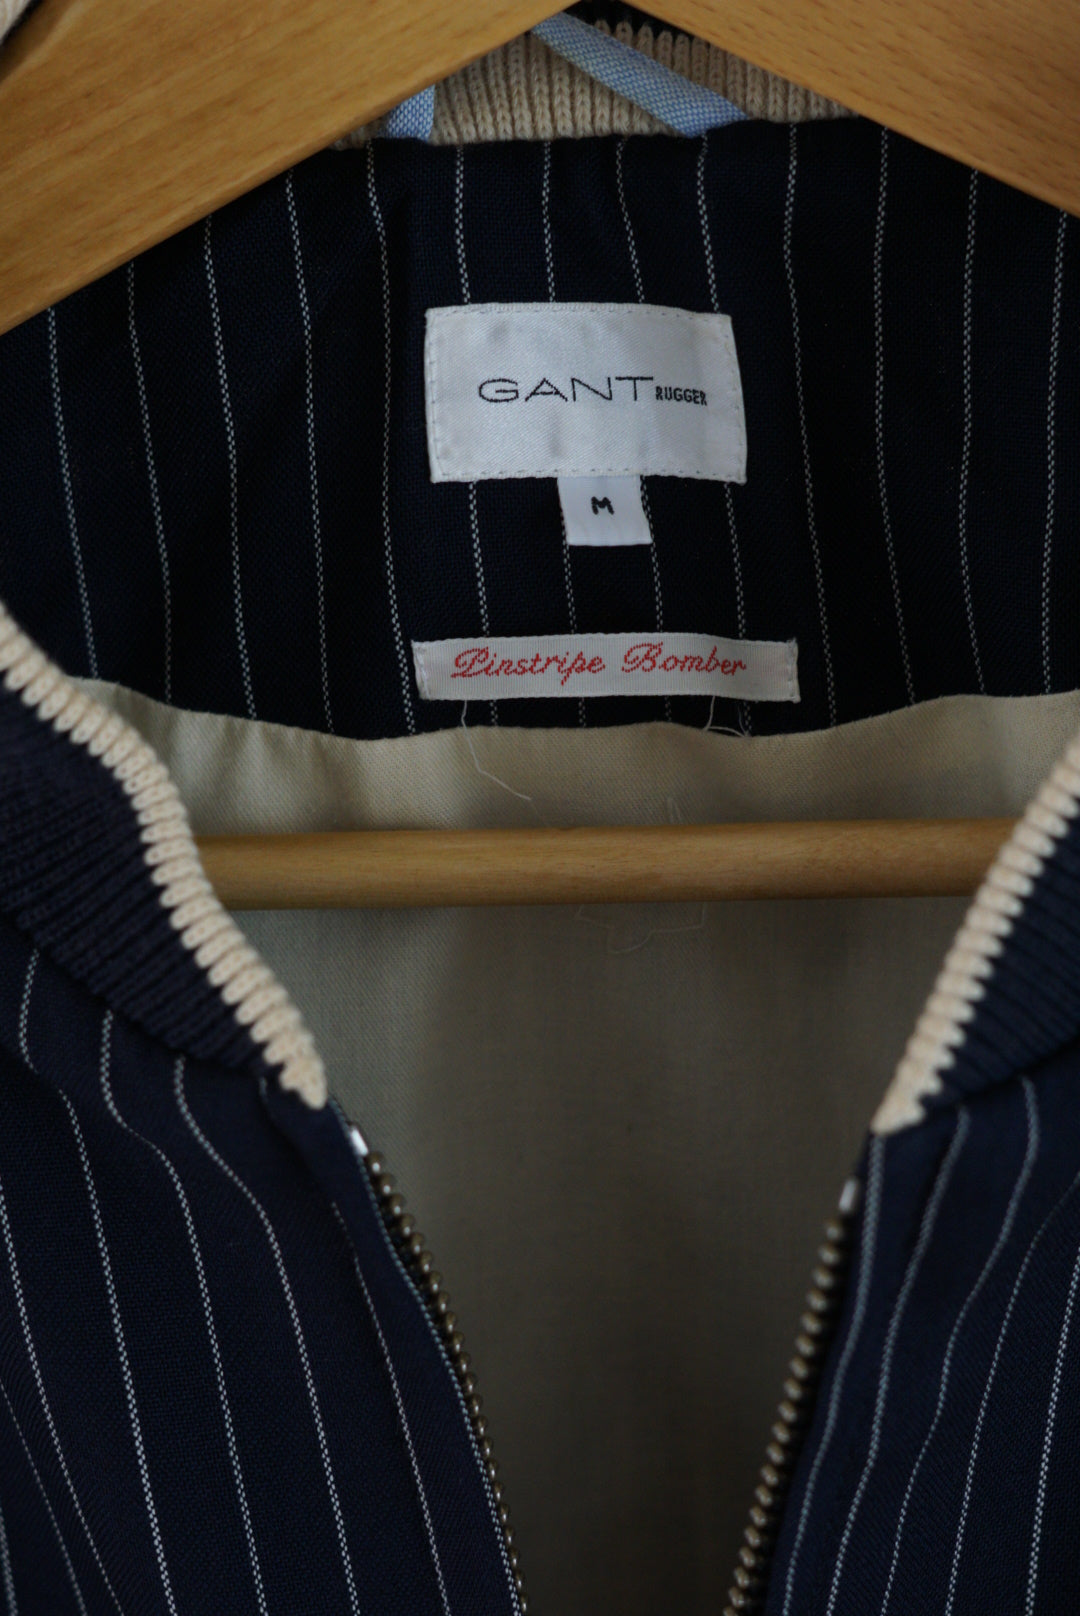 Gant Rugger Blue &amp; White Pinstripe Bomber Jacket